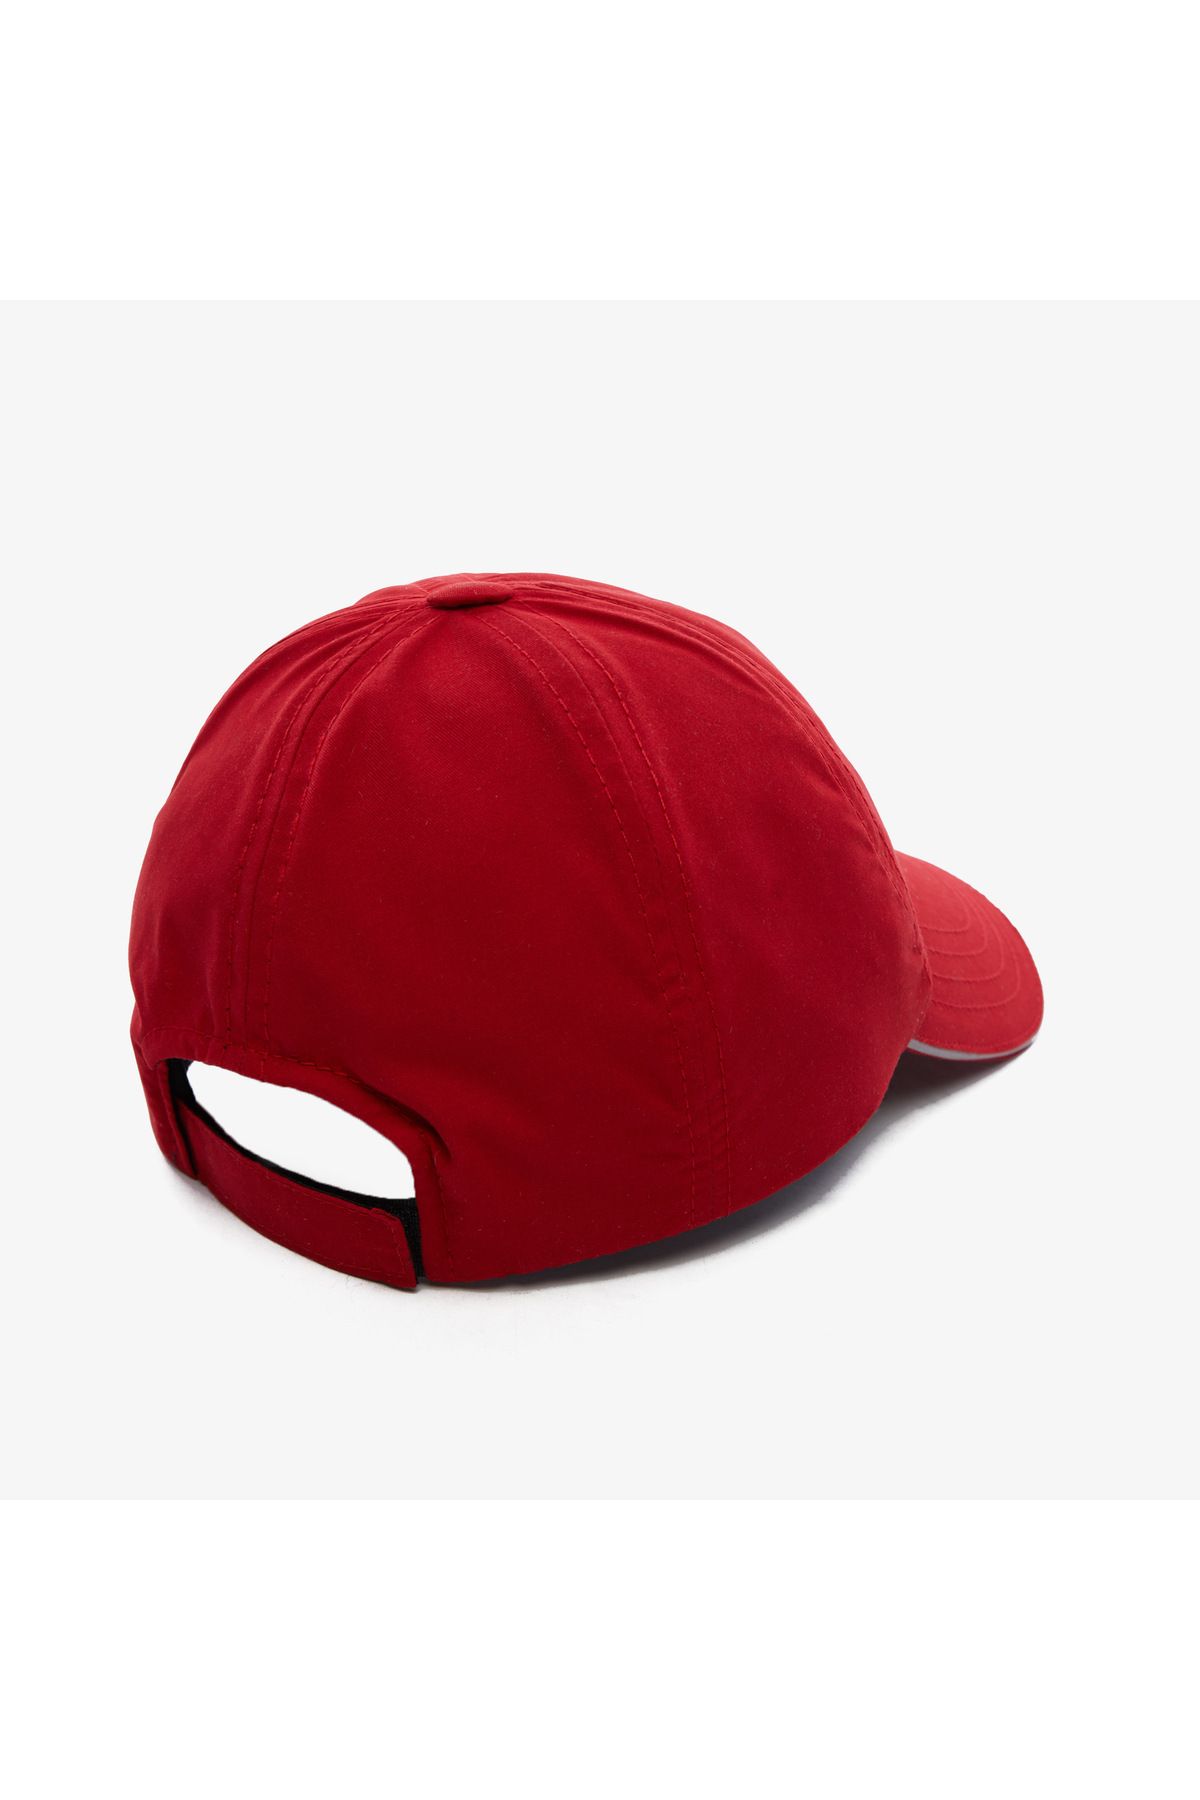 Nautica unisex red hat